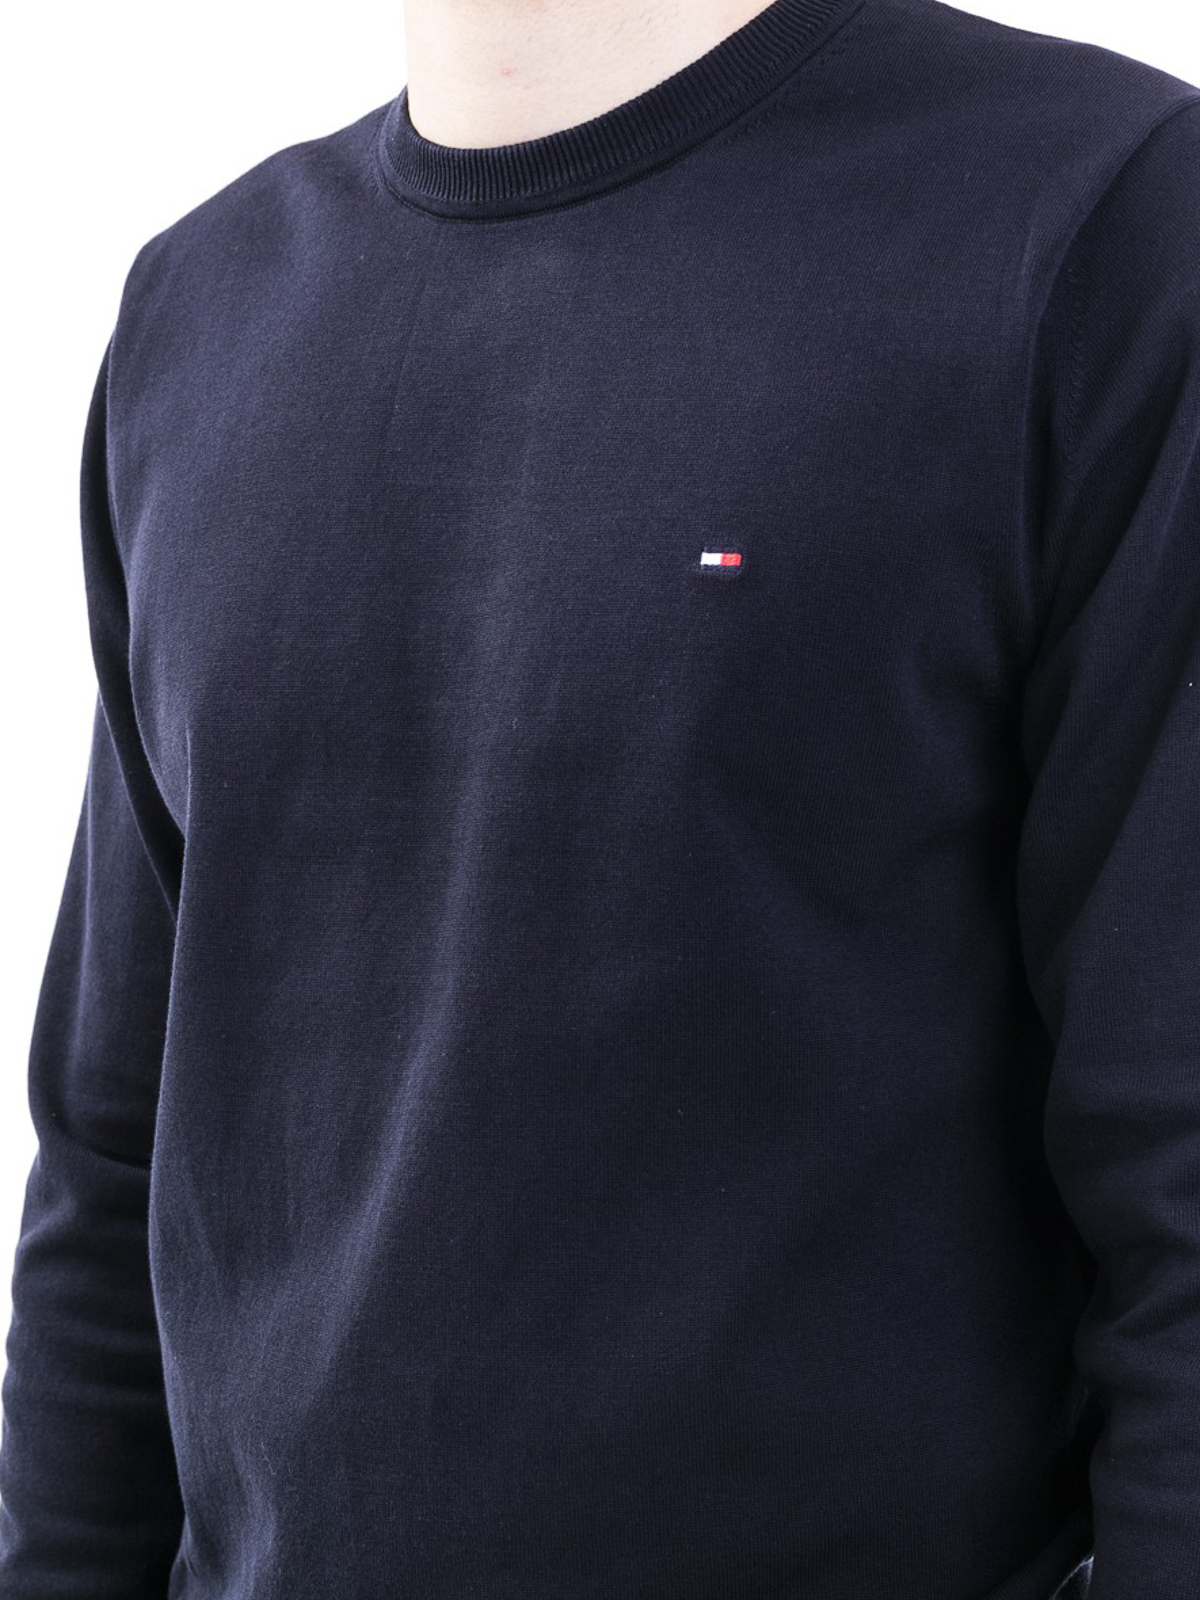 necks Hilfiger - Cotton blue sweater -